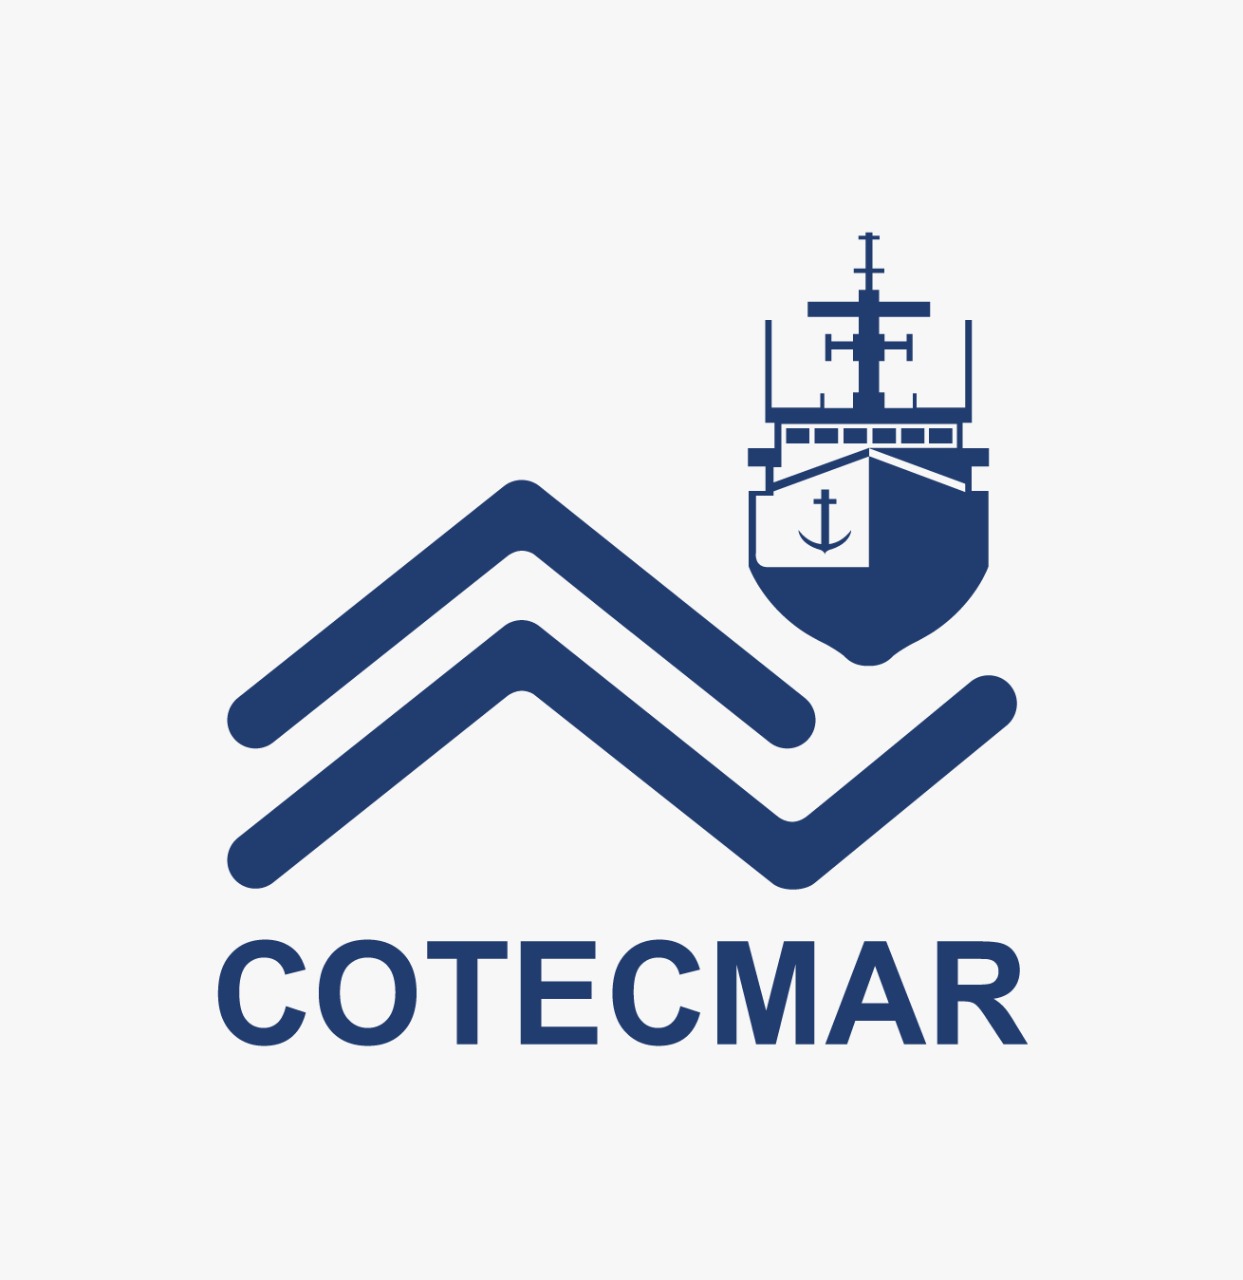 COTECMAR - Corporación de Ciencia y Tecnología para el Desarrollo de la Industria Naval Marítima y Fluvial